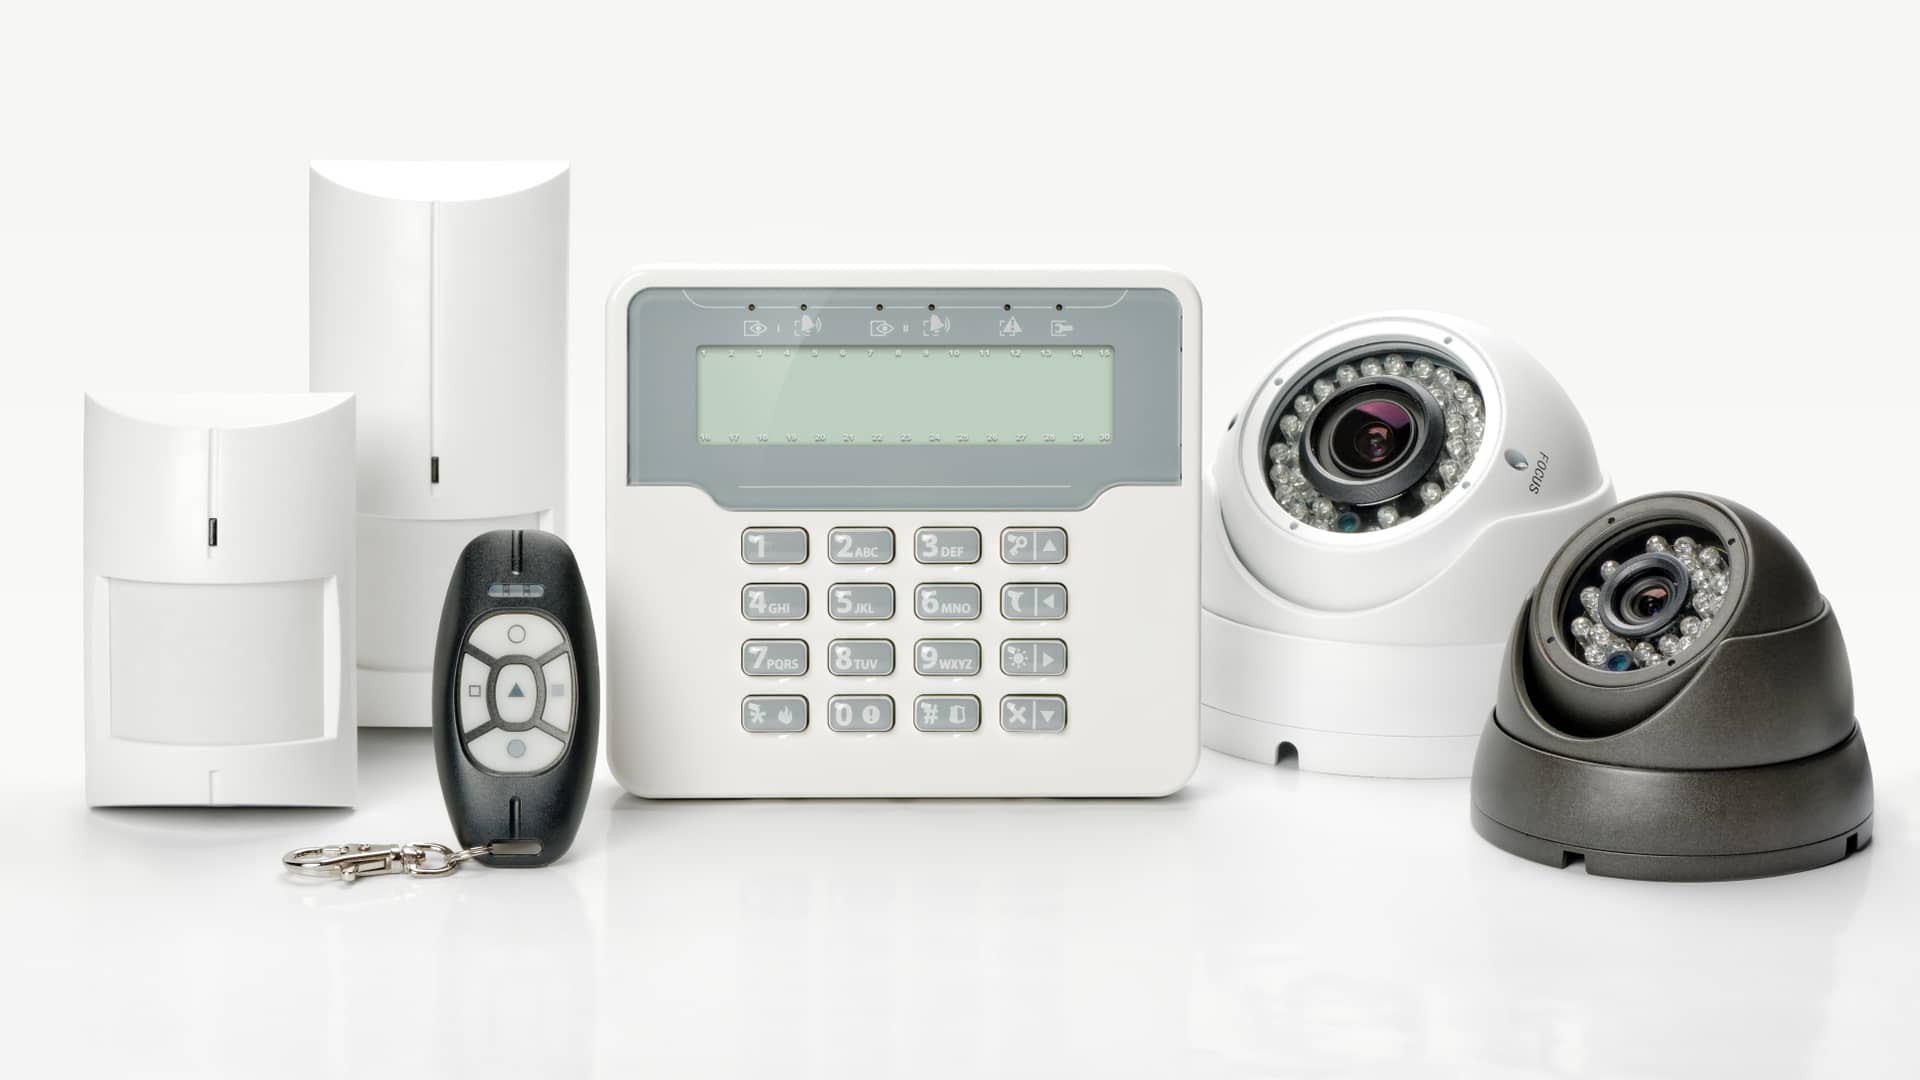 Sistema de alarma CCTV, a continuación hablaremos de las mejores alarmas del mercado